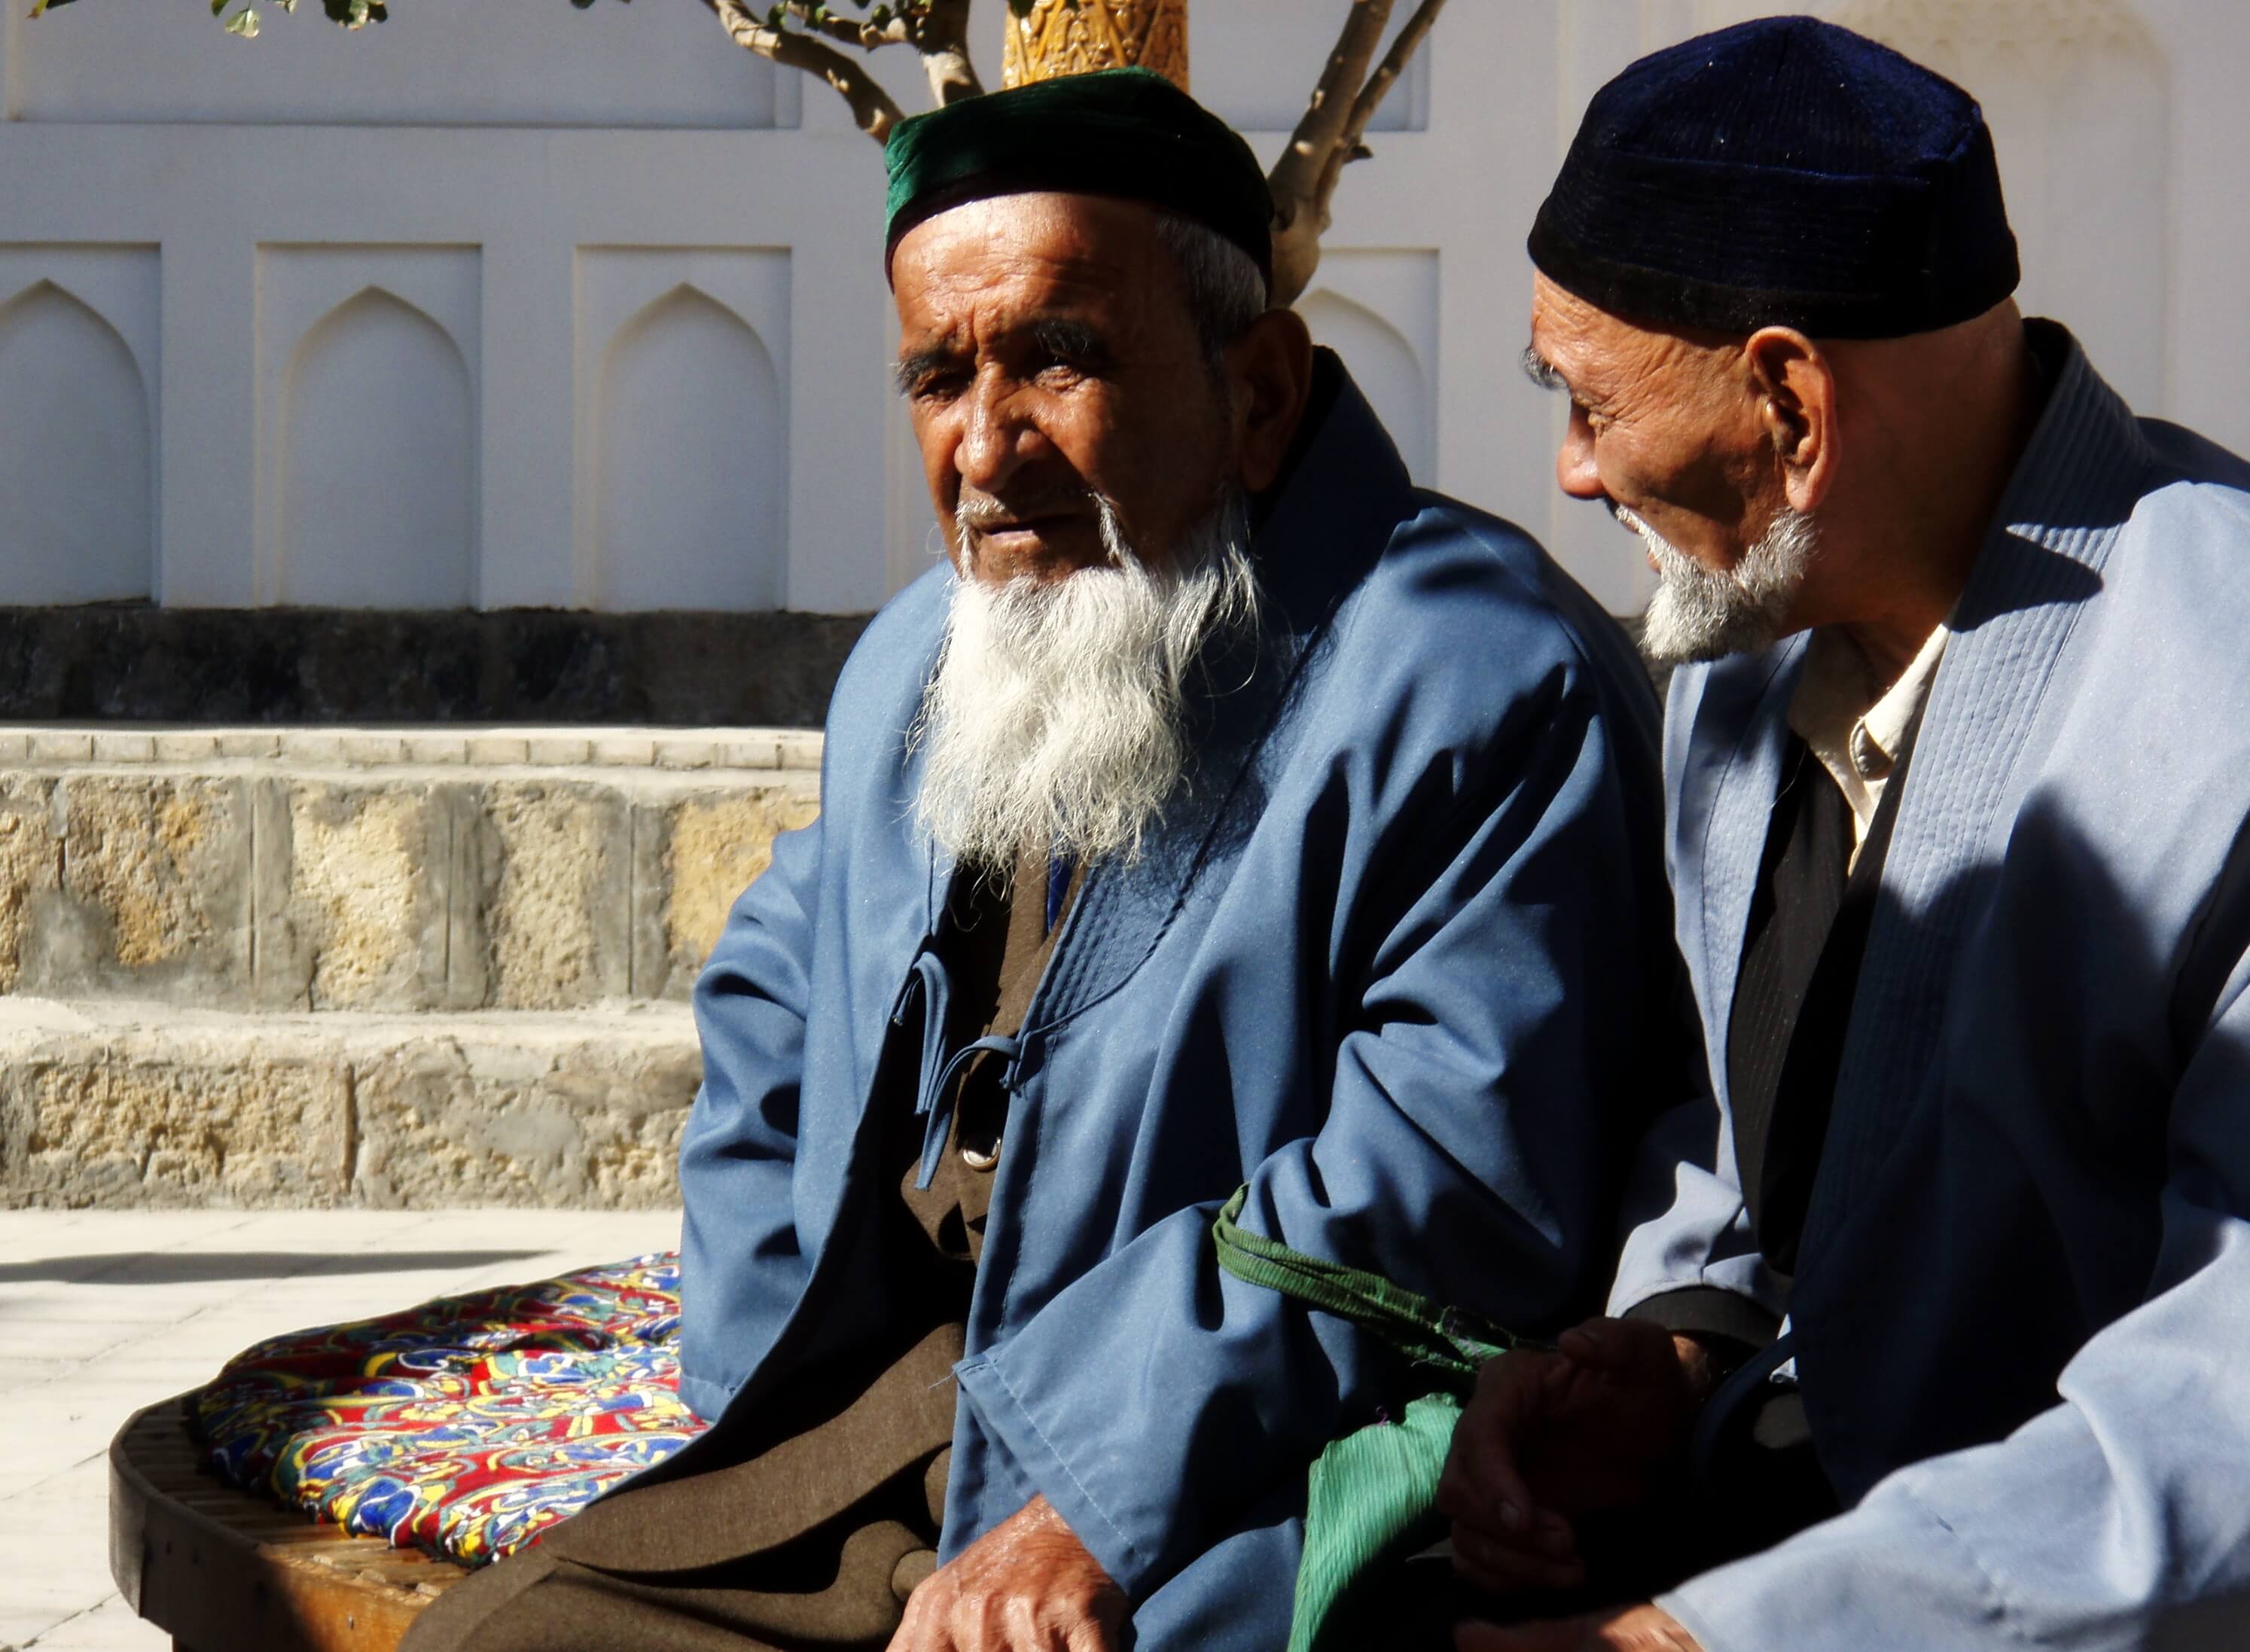 oezbekistan, oude mannen.jpg